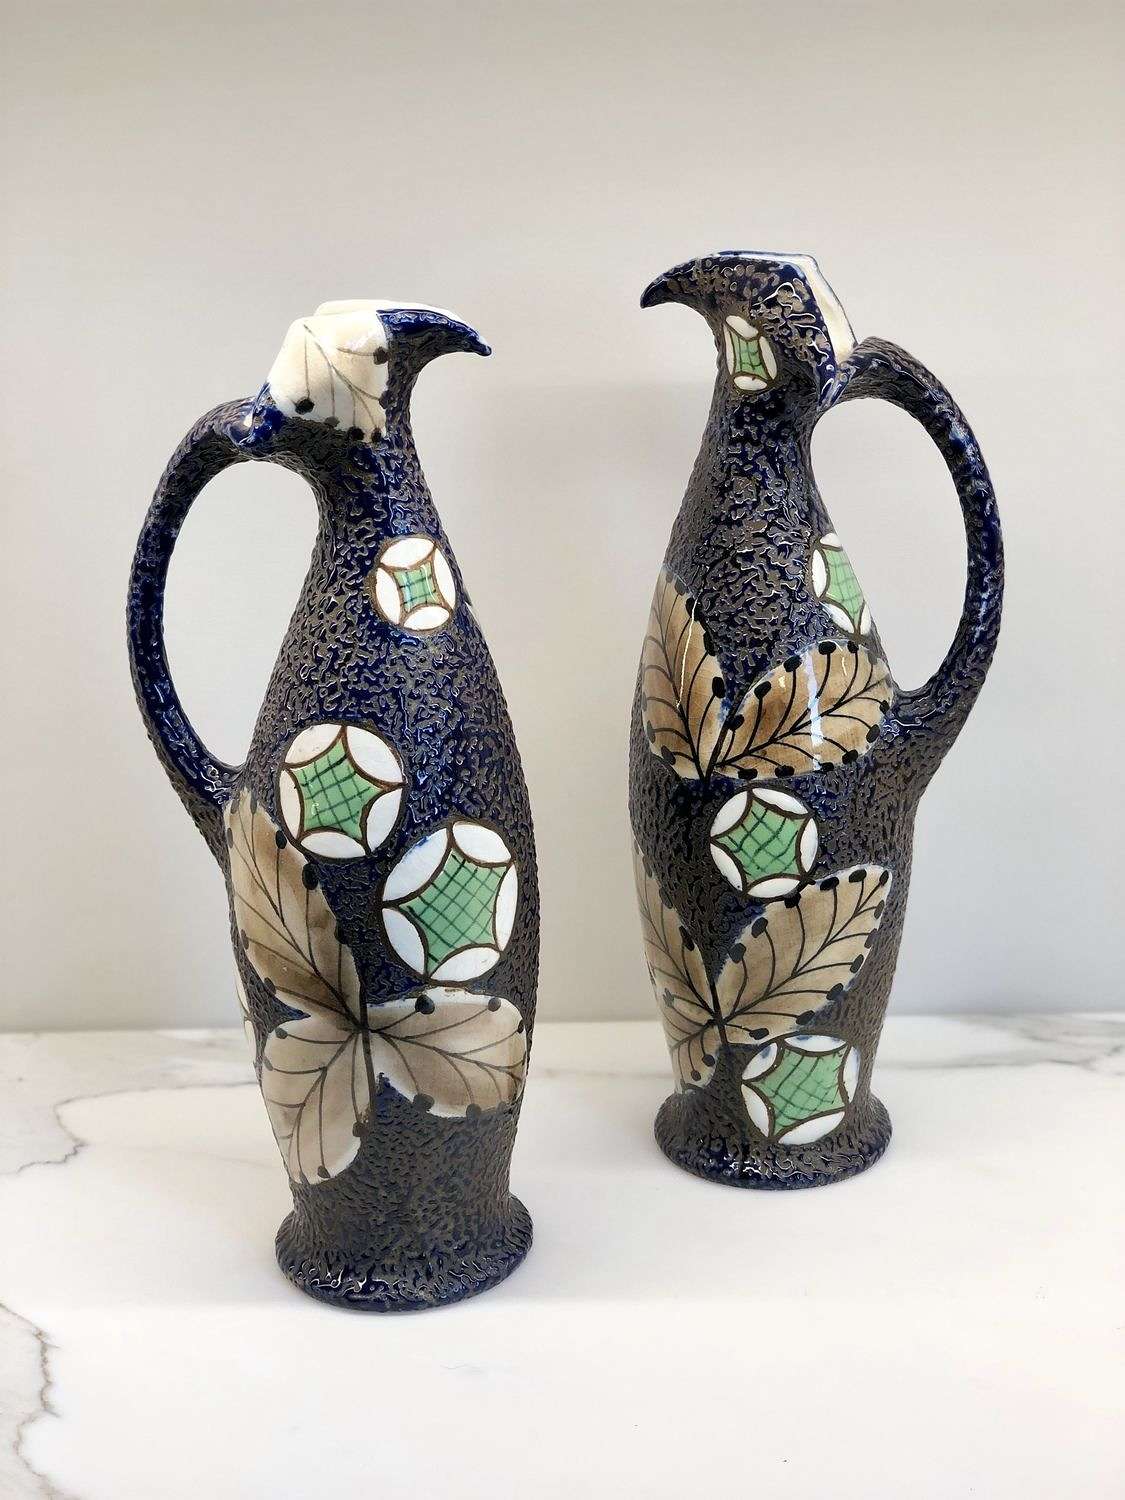 Exquisite pair of Art Nouveau Amphora enamelled jugs